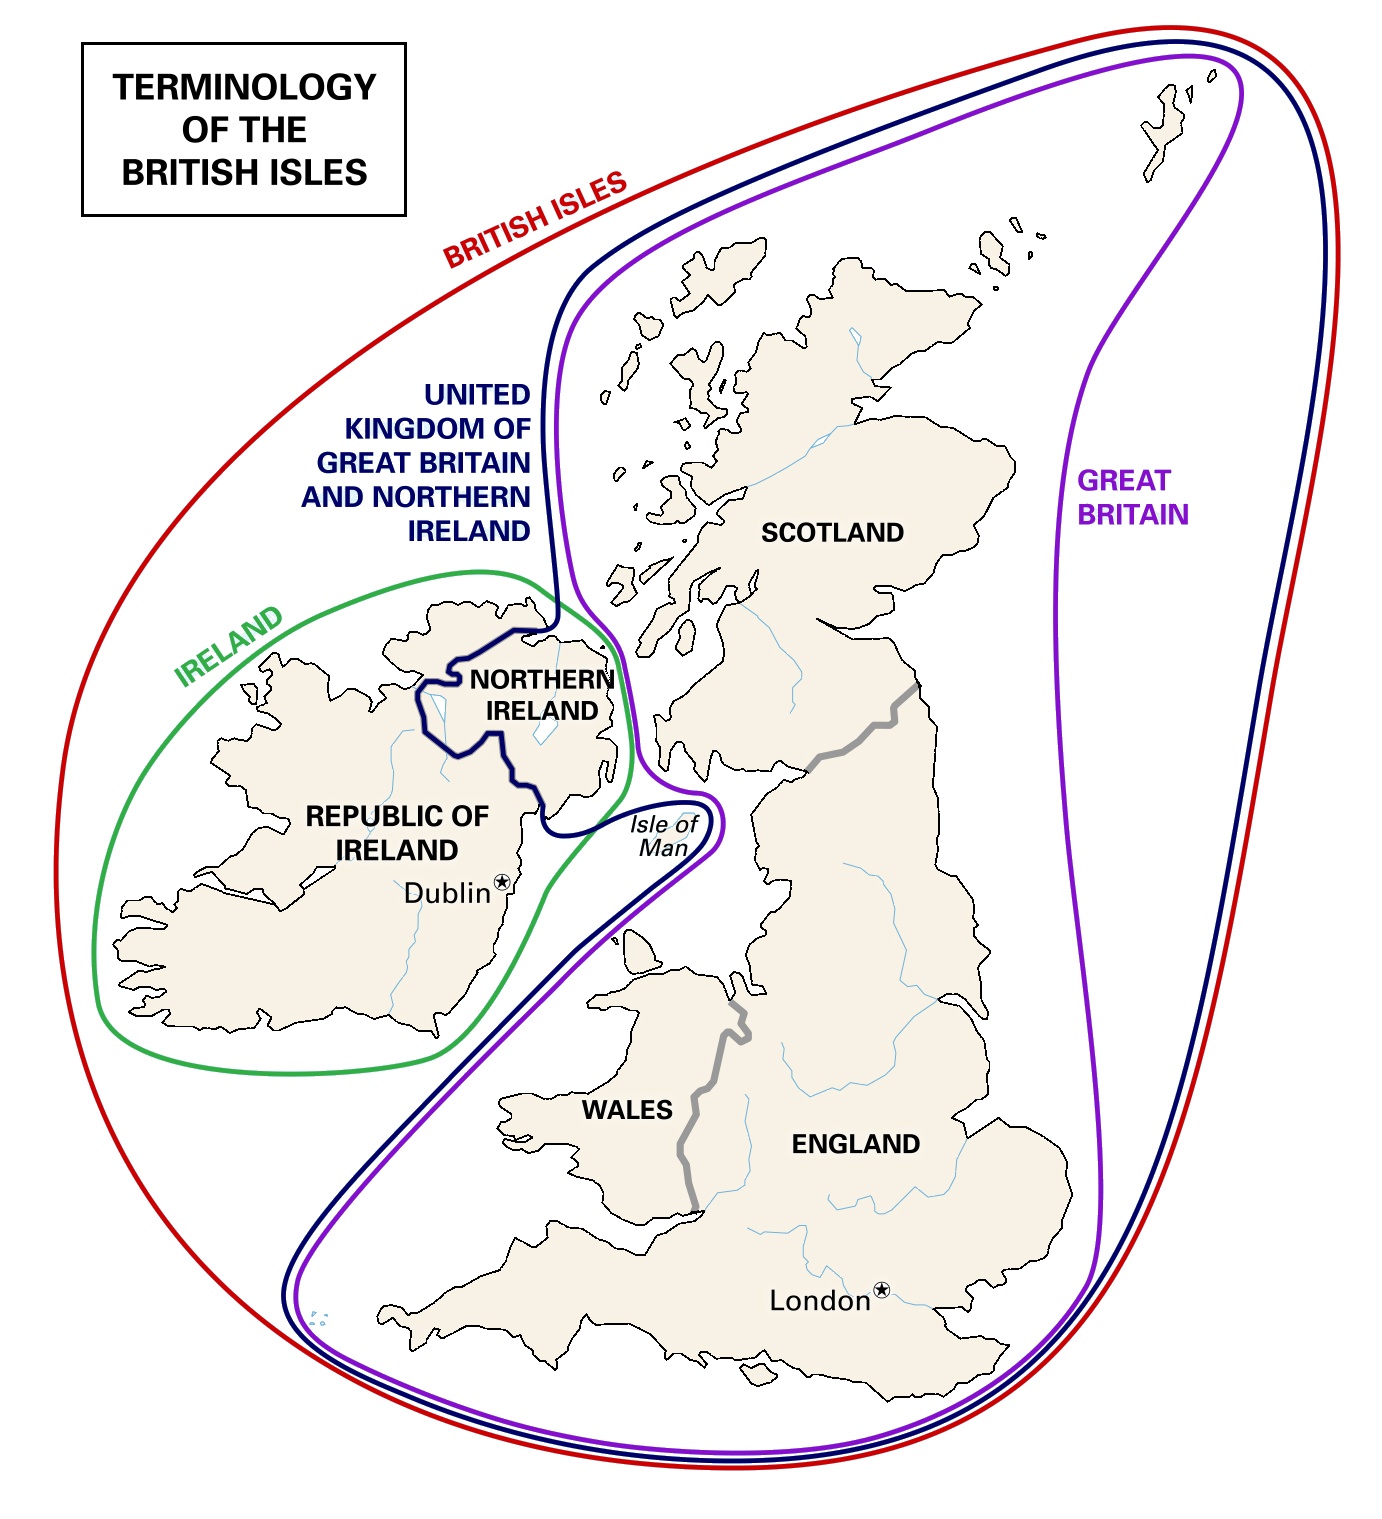 Podział Wysp Brytyjskich (terminologia)